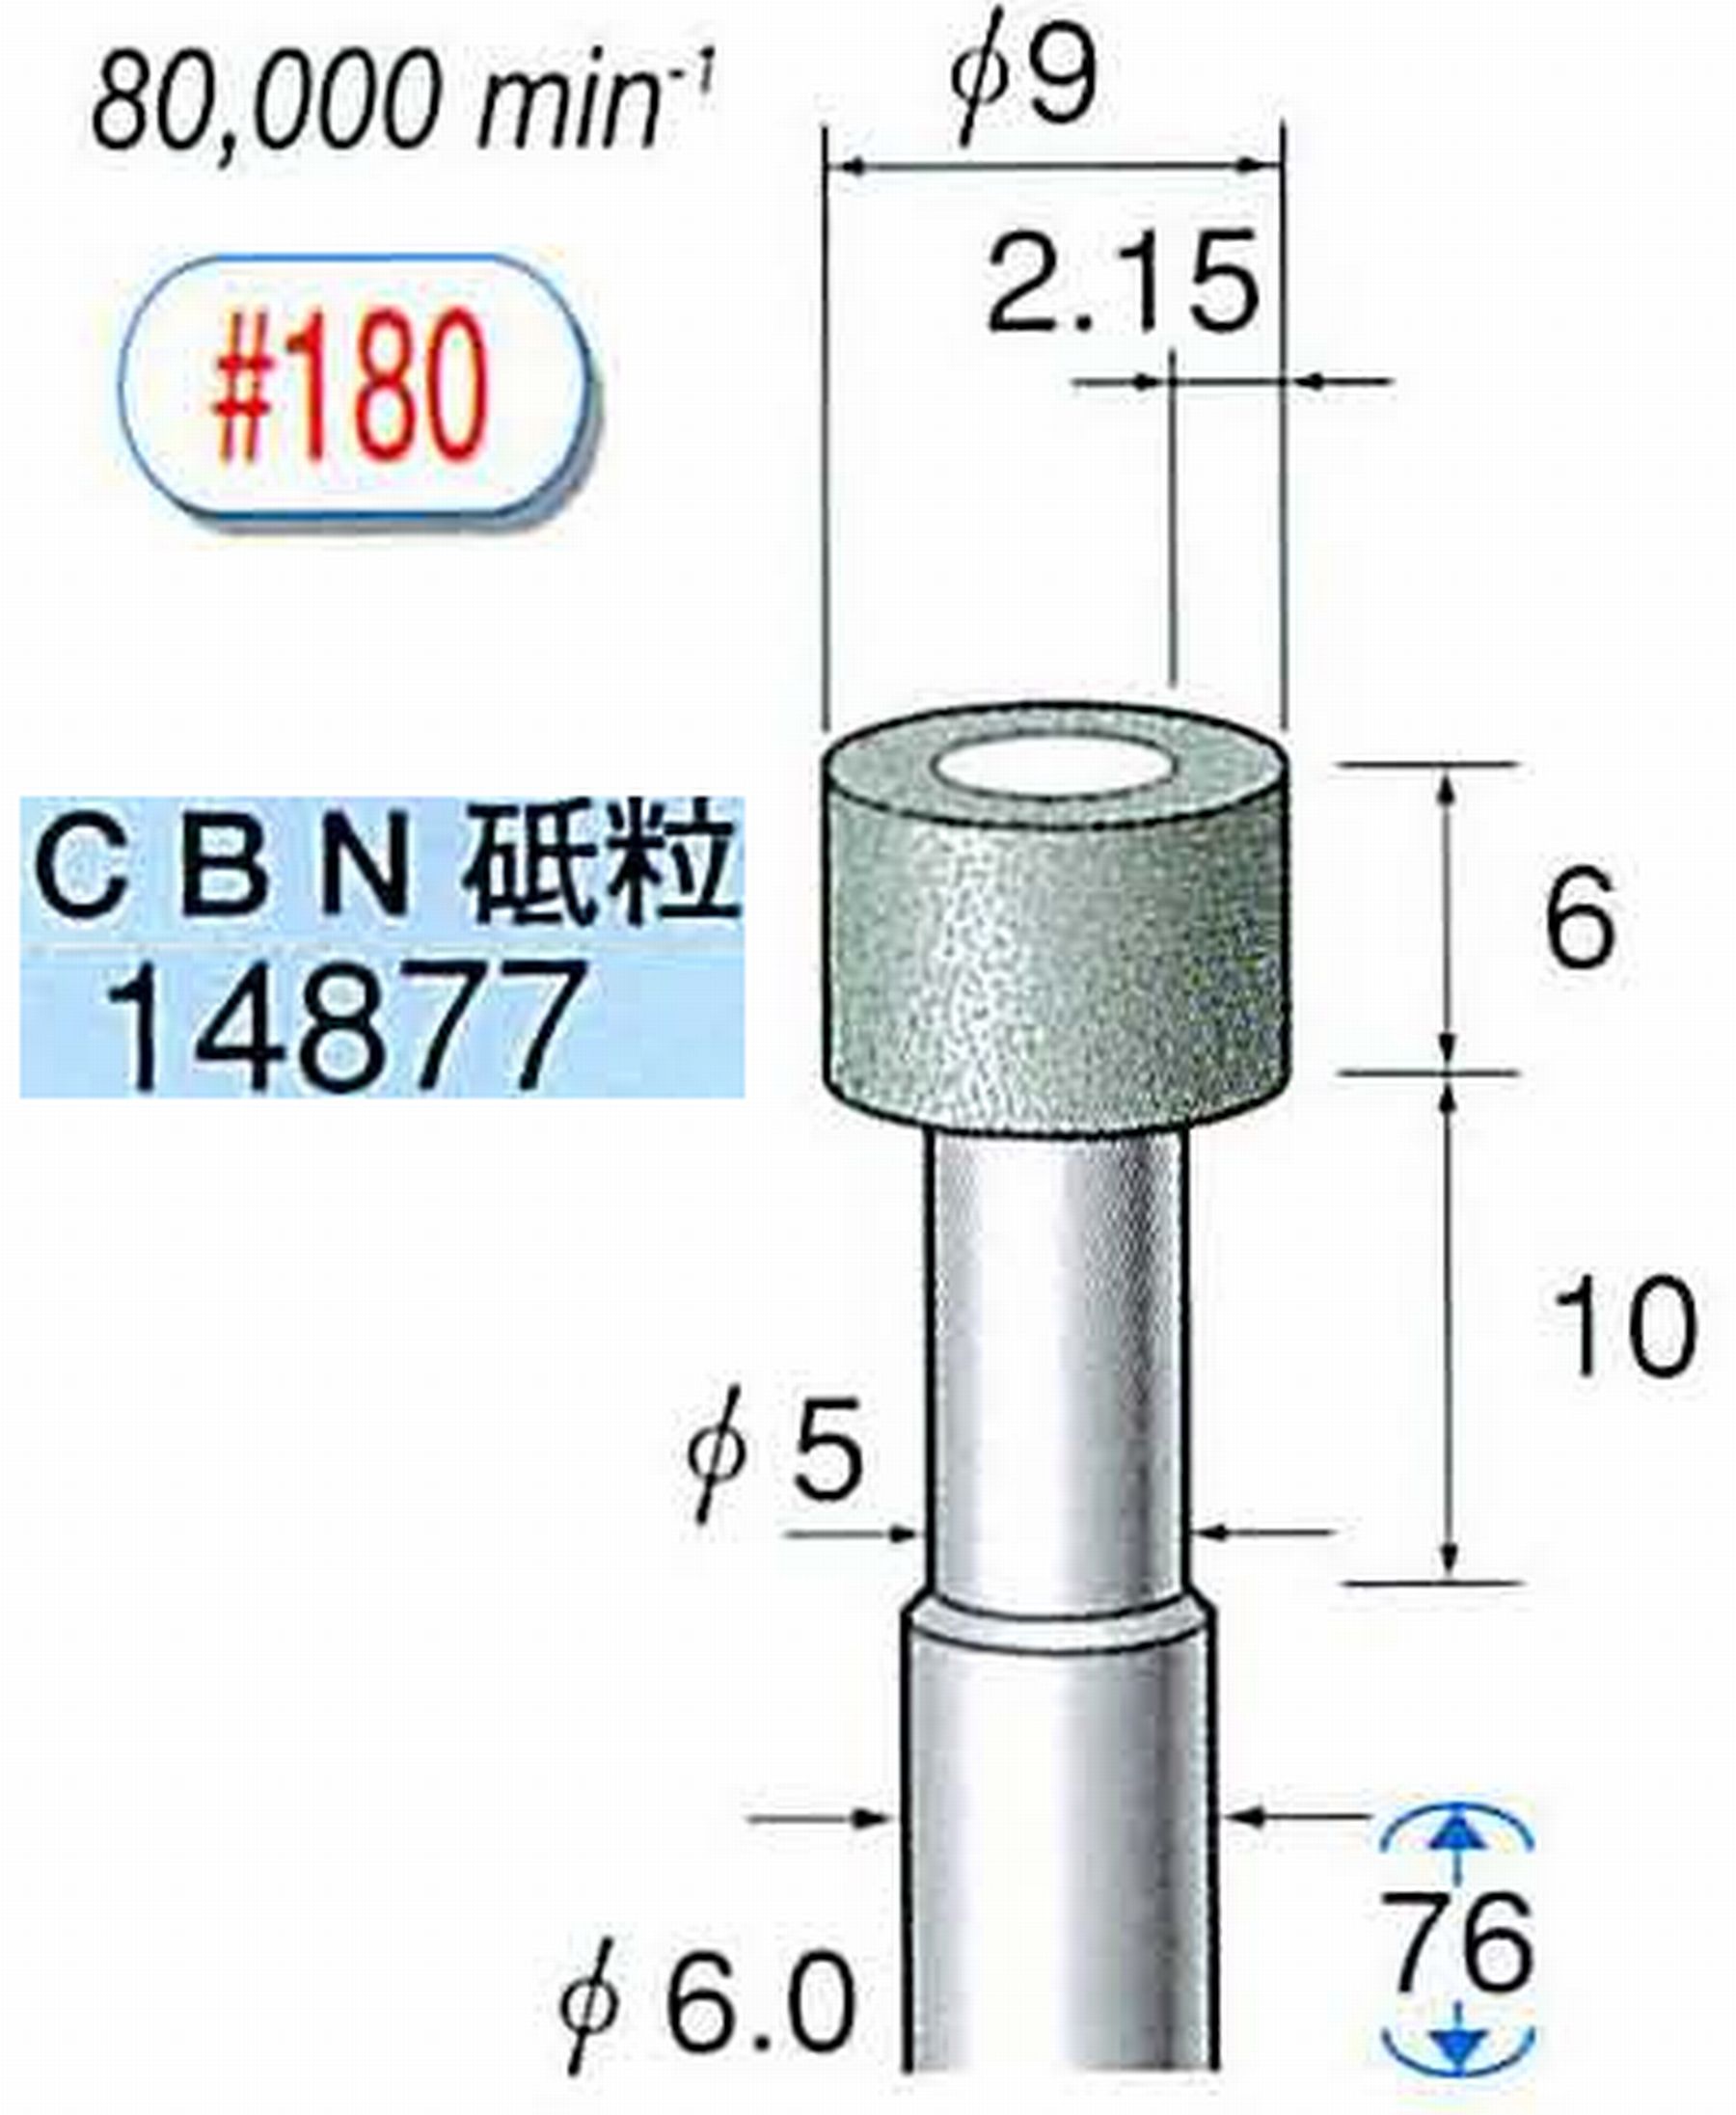 ナカニシ/NAKANISHI ビトリファイドダイヤモンド砥石 CBN砥粒 軸径(シャンク)φ6.0mm 14877